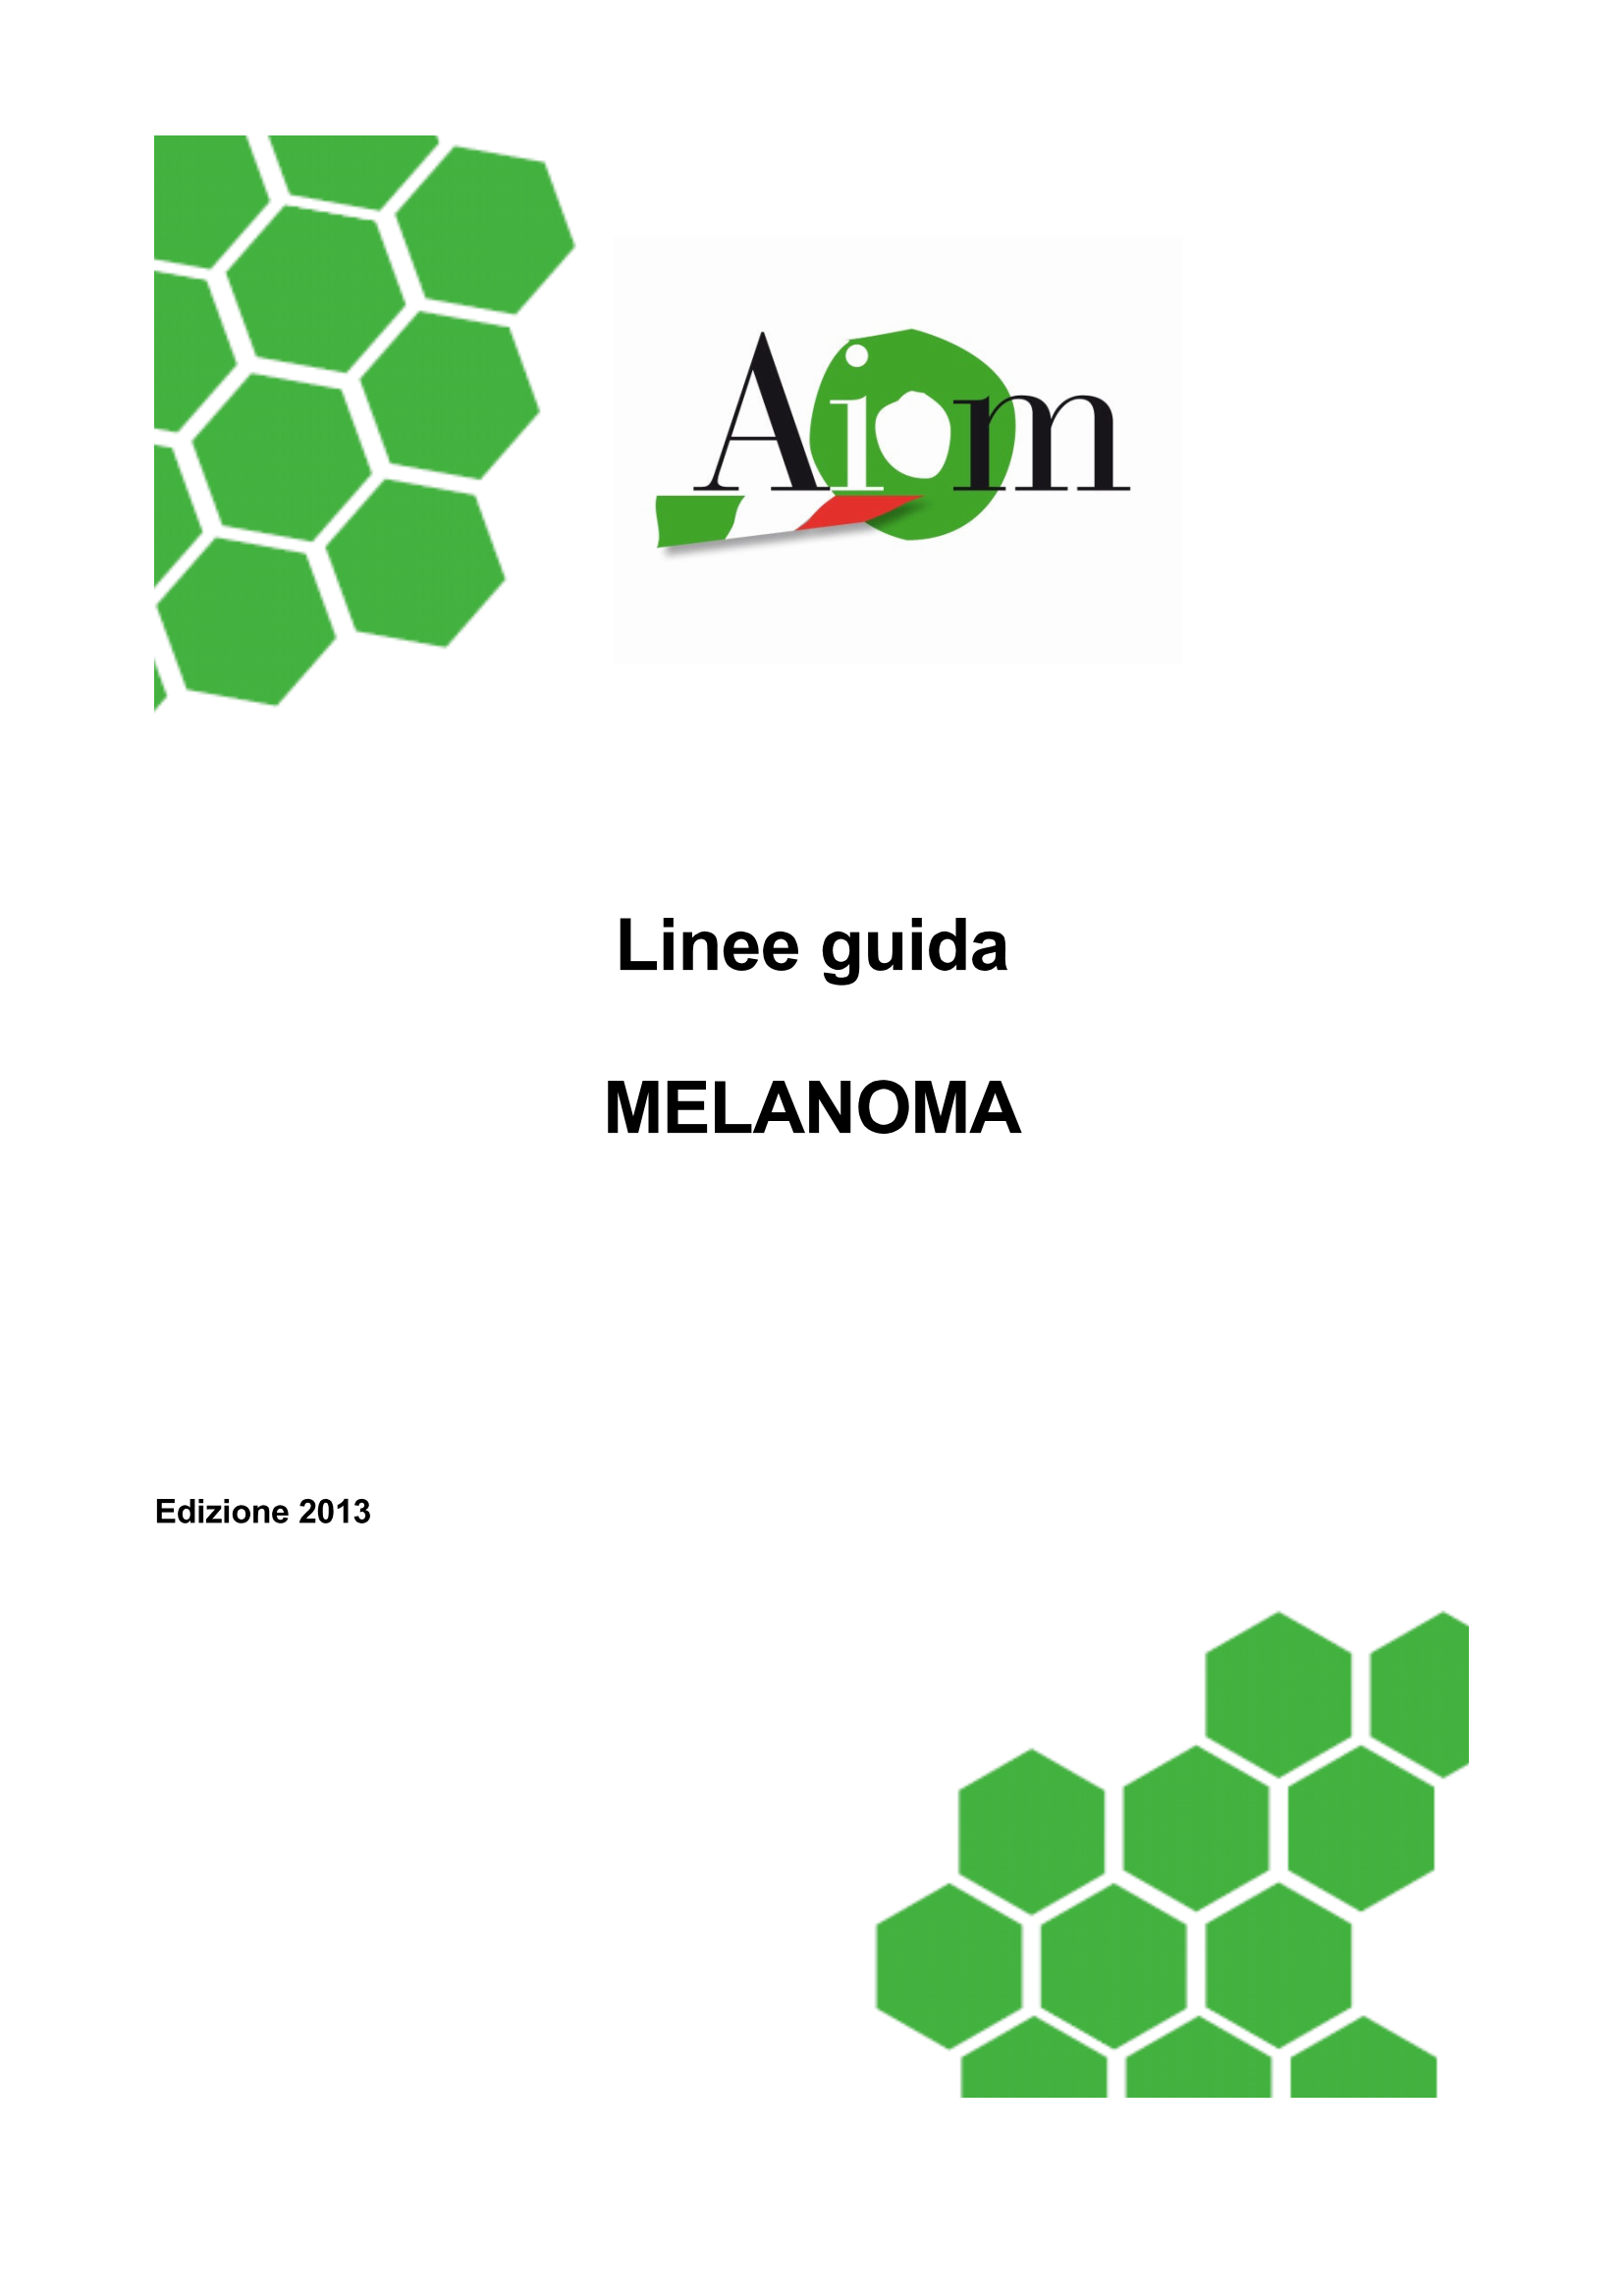 2013 LG AIOM Melanoma Page 1